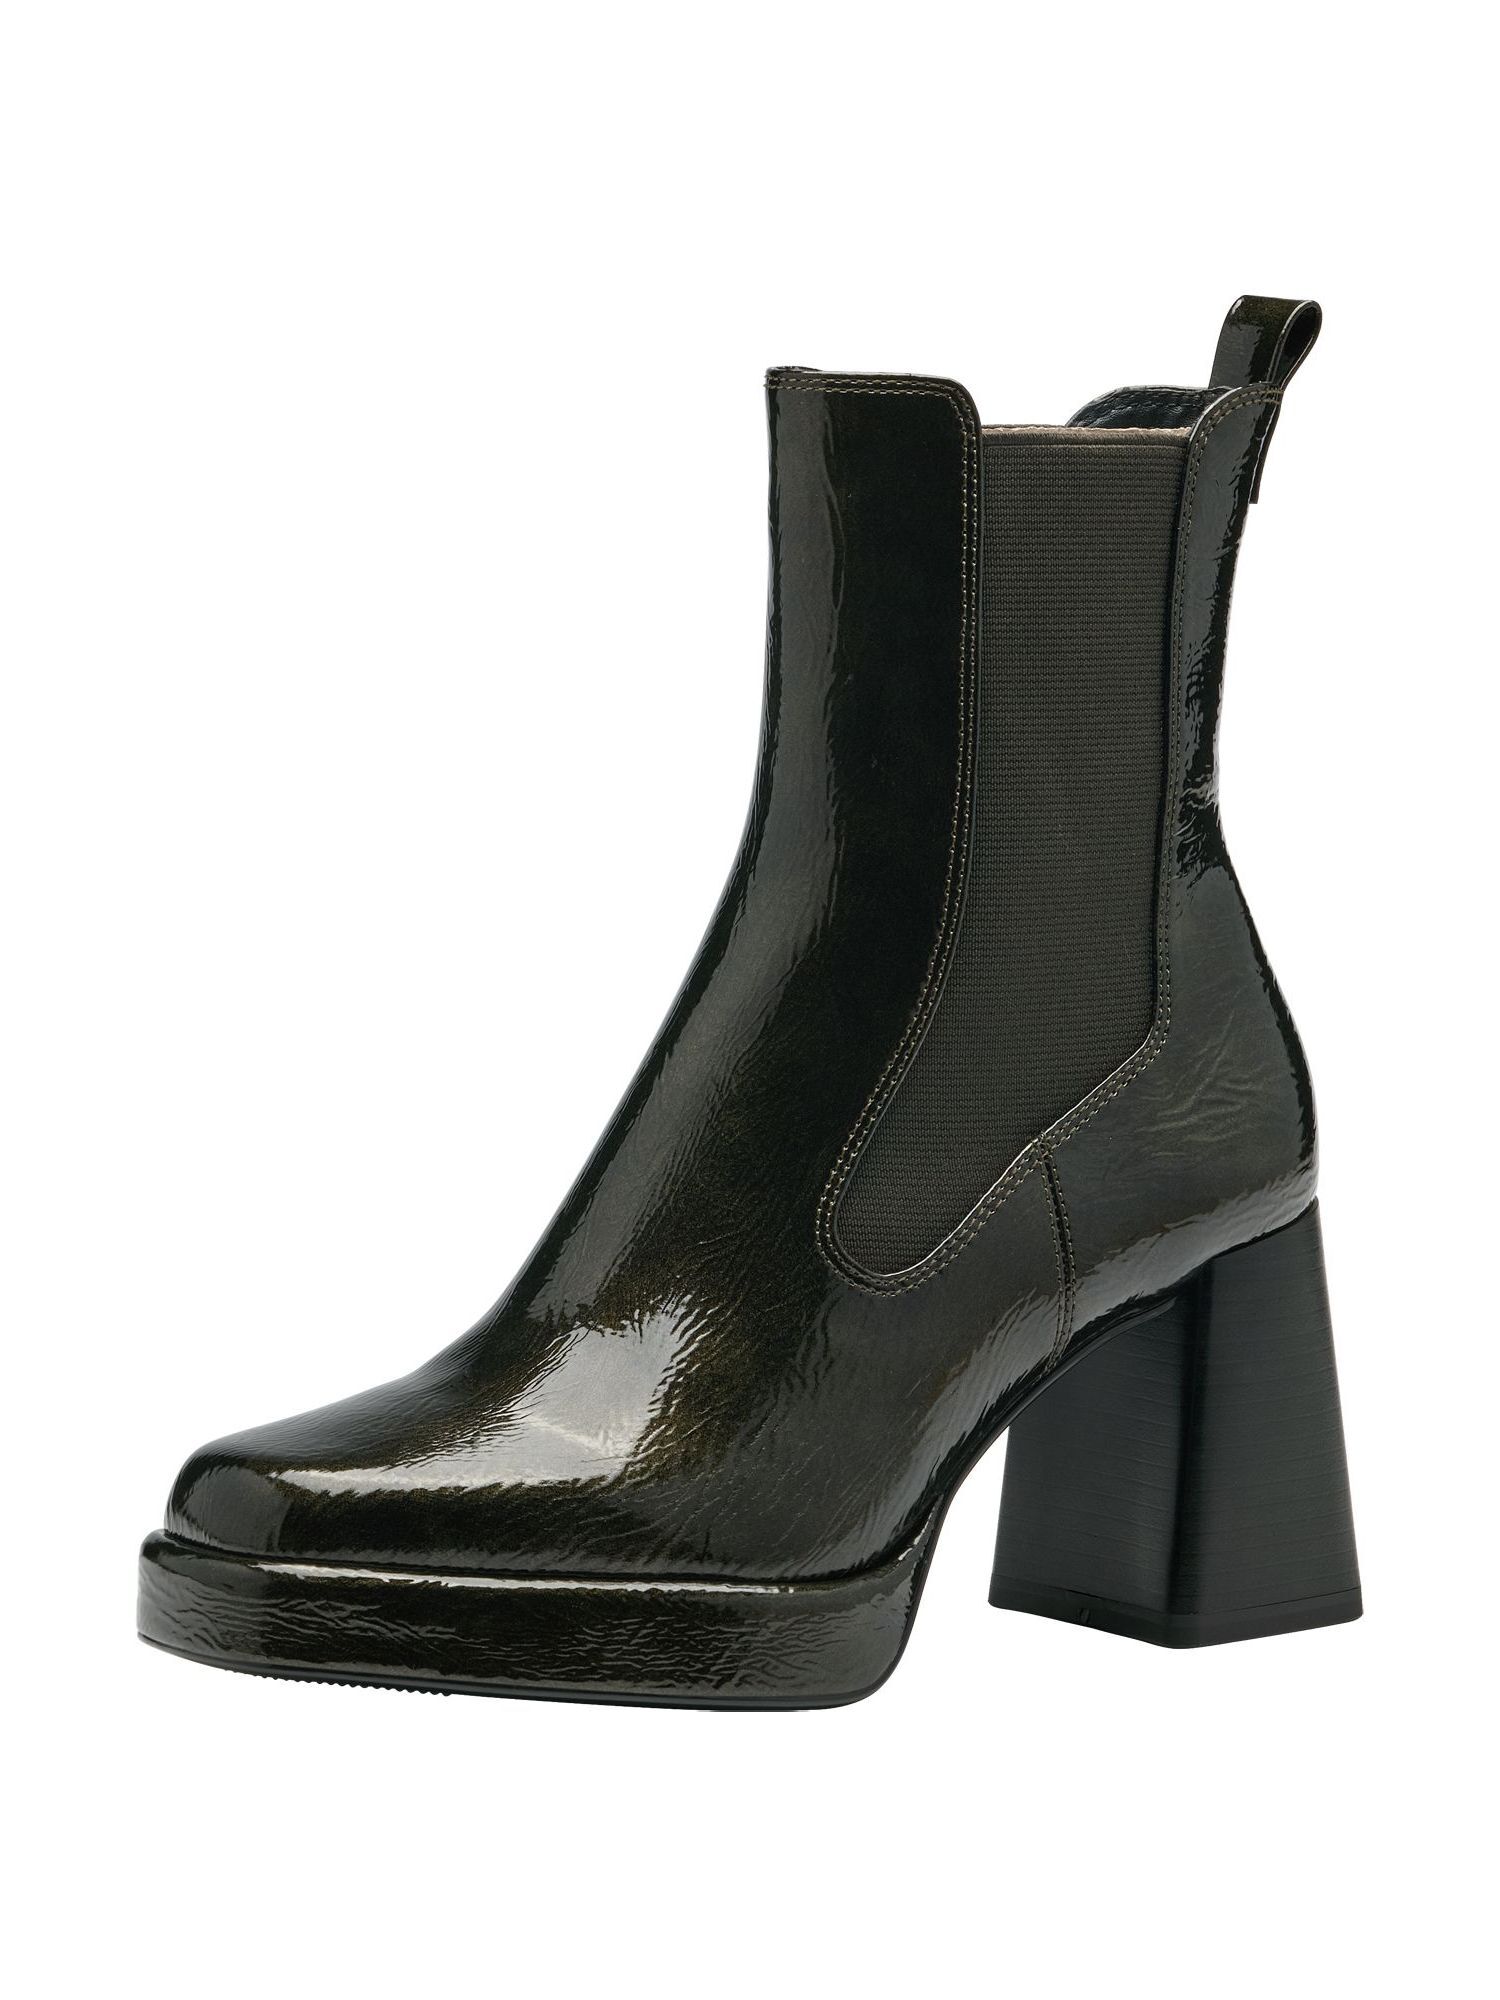 Ботинки Tamaris Chelsea Boot, оливковый ботинки женские tamaris оливковый 37